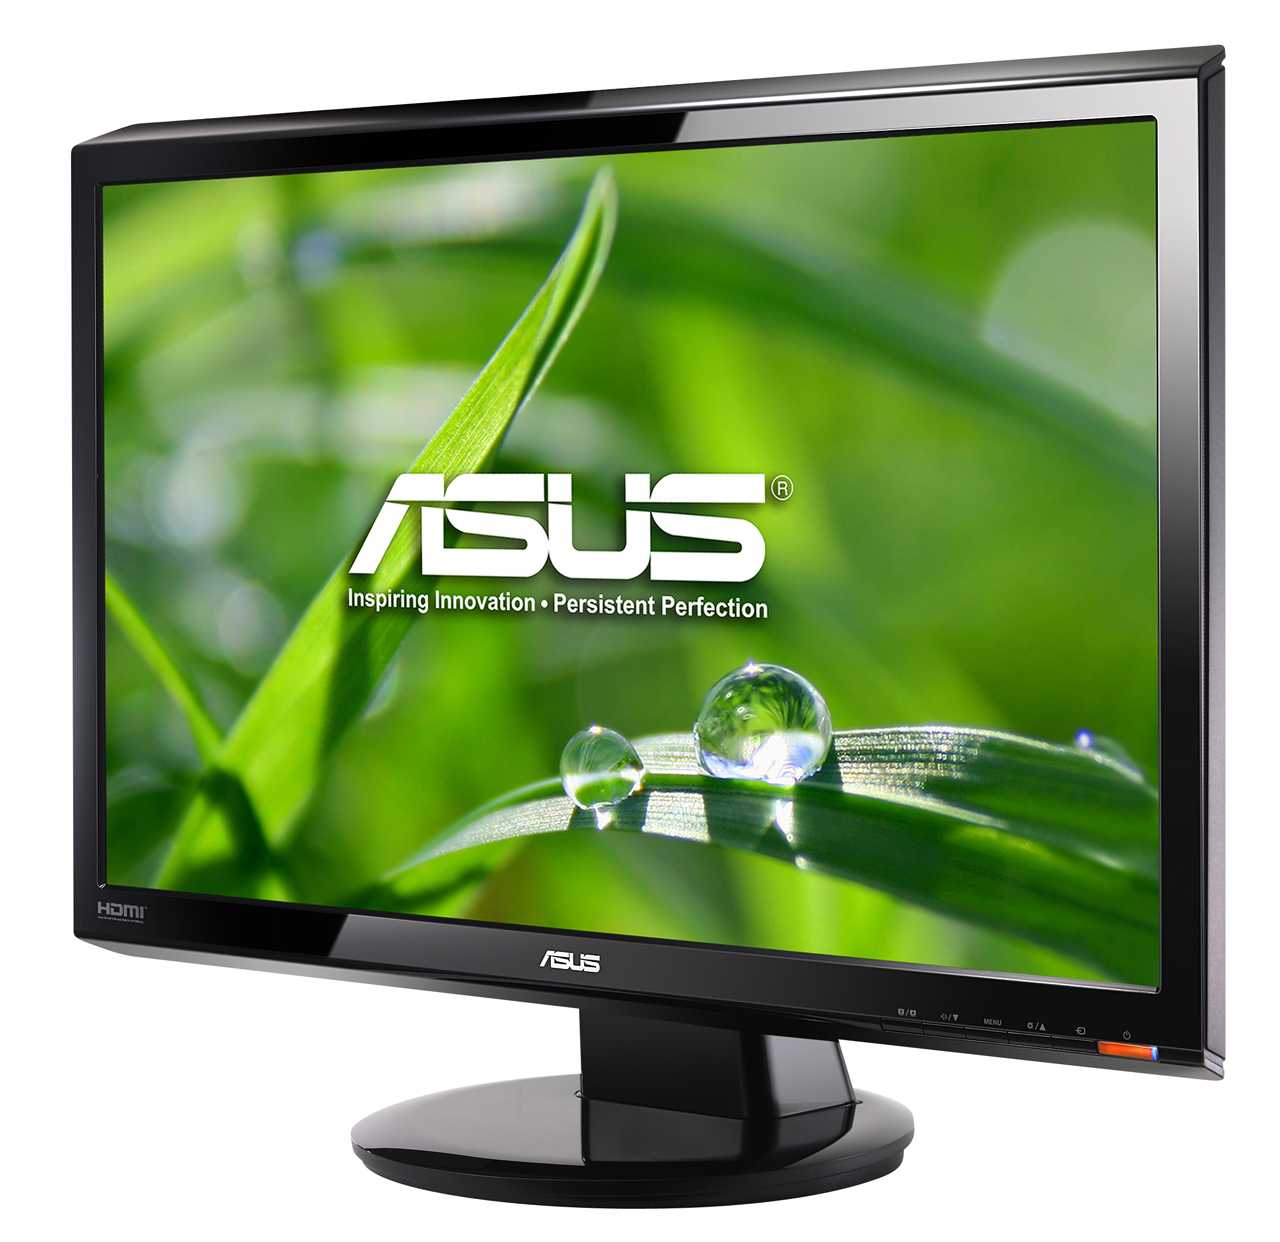 Asus vh242s (черный) - купить , скидки, цена, отзывы, обзор, характеристики - мониторы